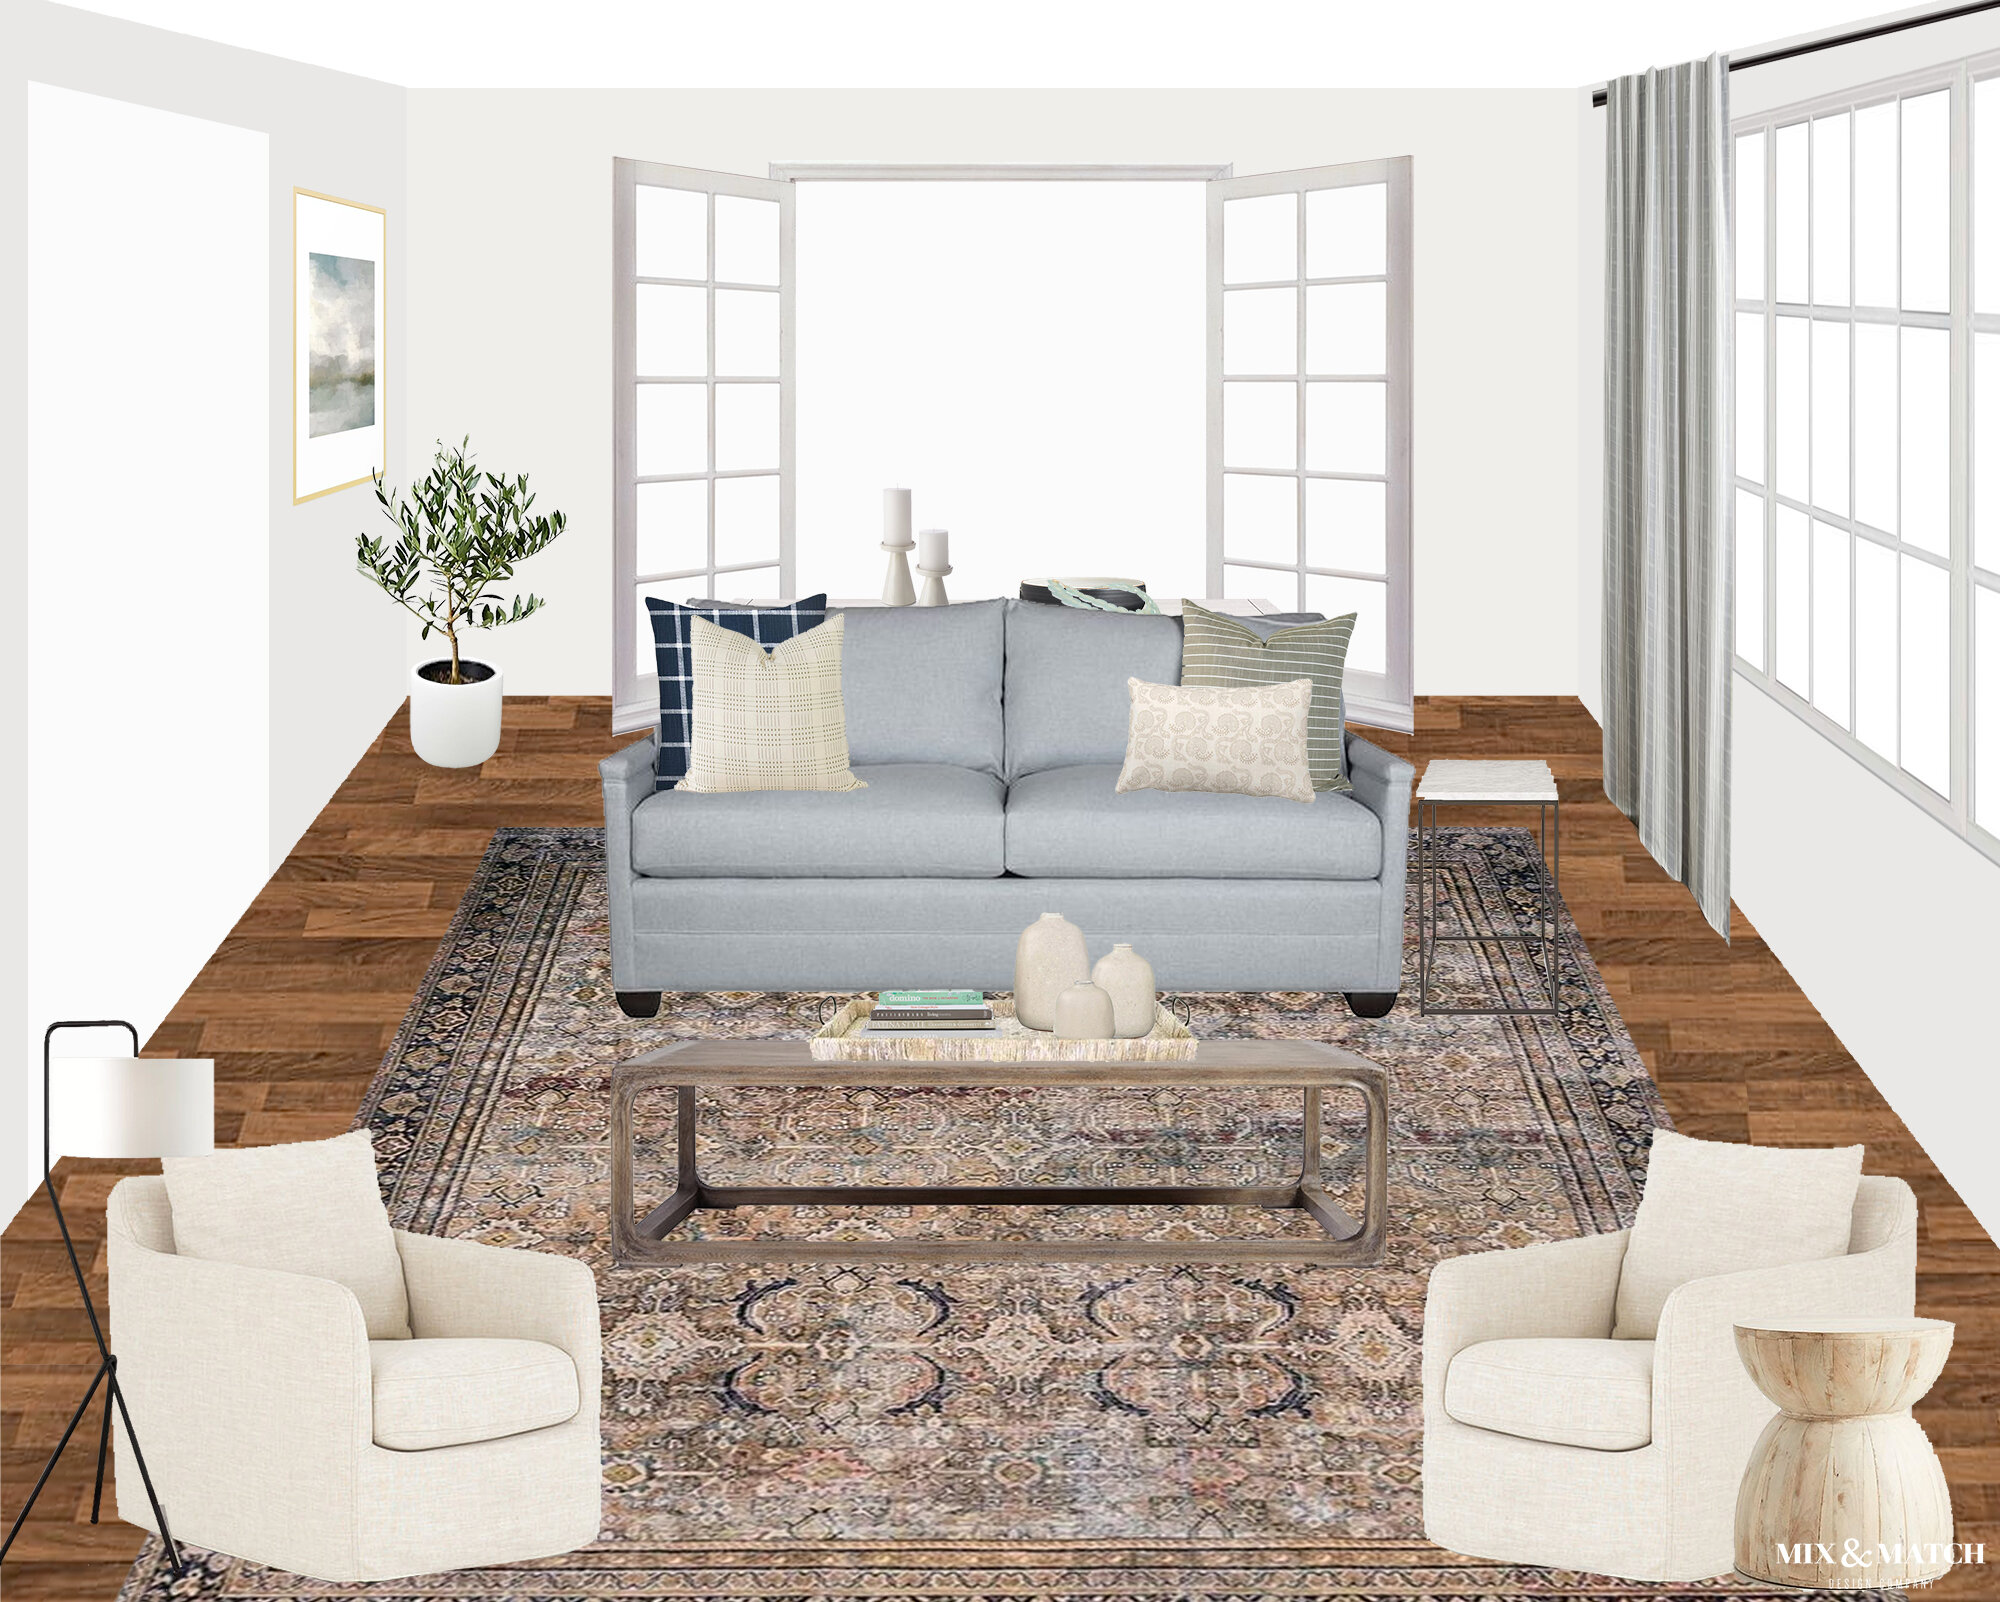 V1-Living Room Design Board.jpg